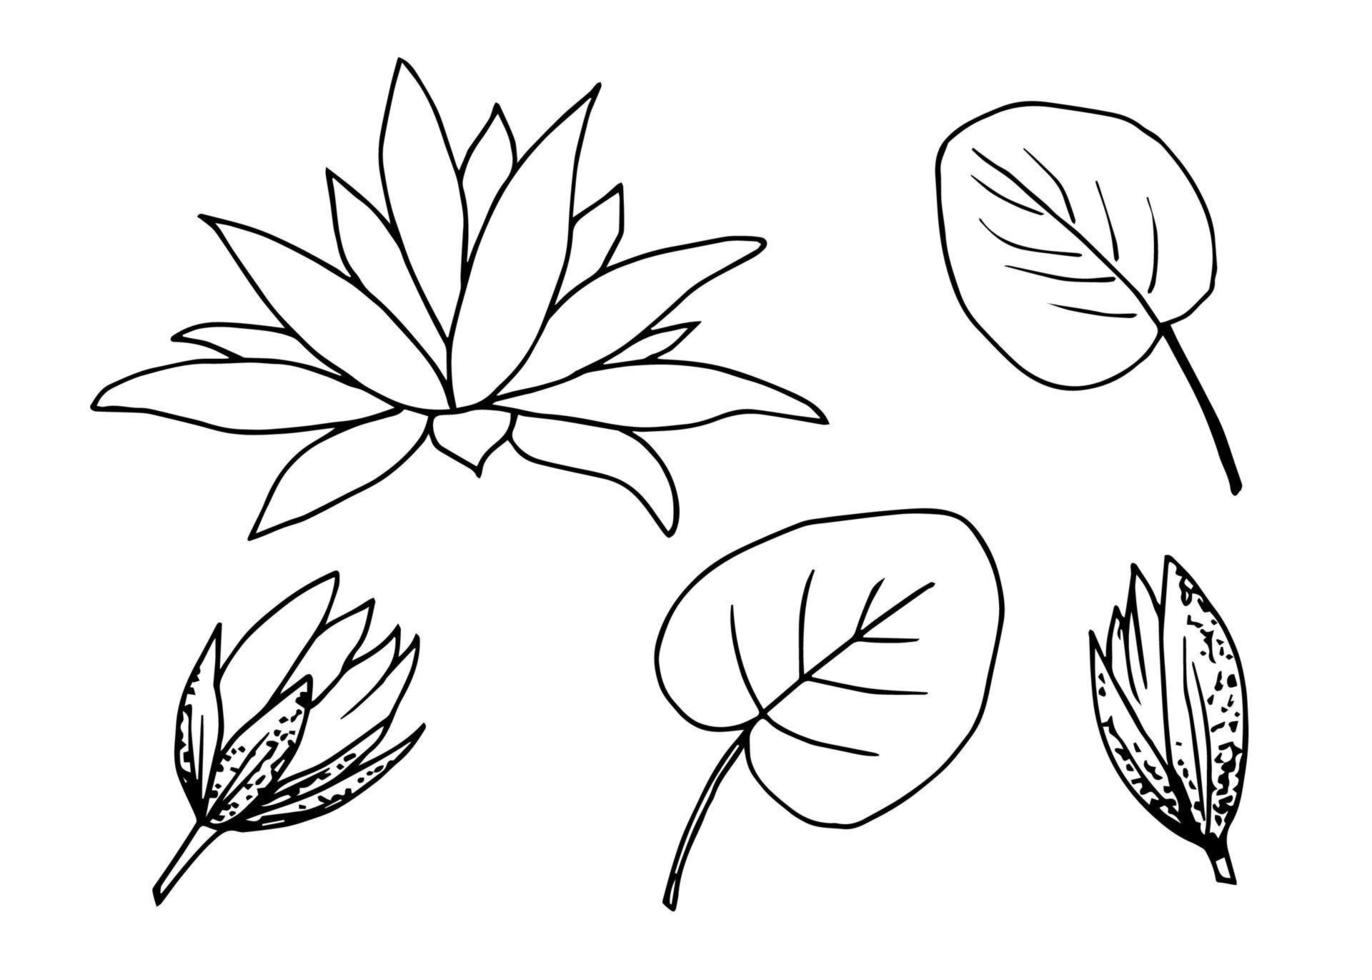 dessin vectoriel d'encre simple. contour noir d'une fleur de nénuphar, lotus, feuille, bourgeon. ensemble d'éléments floraux.